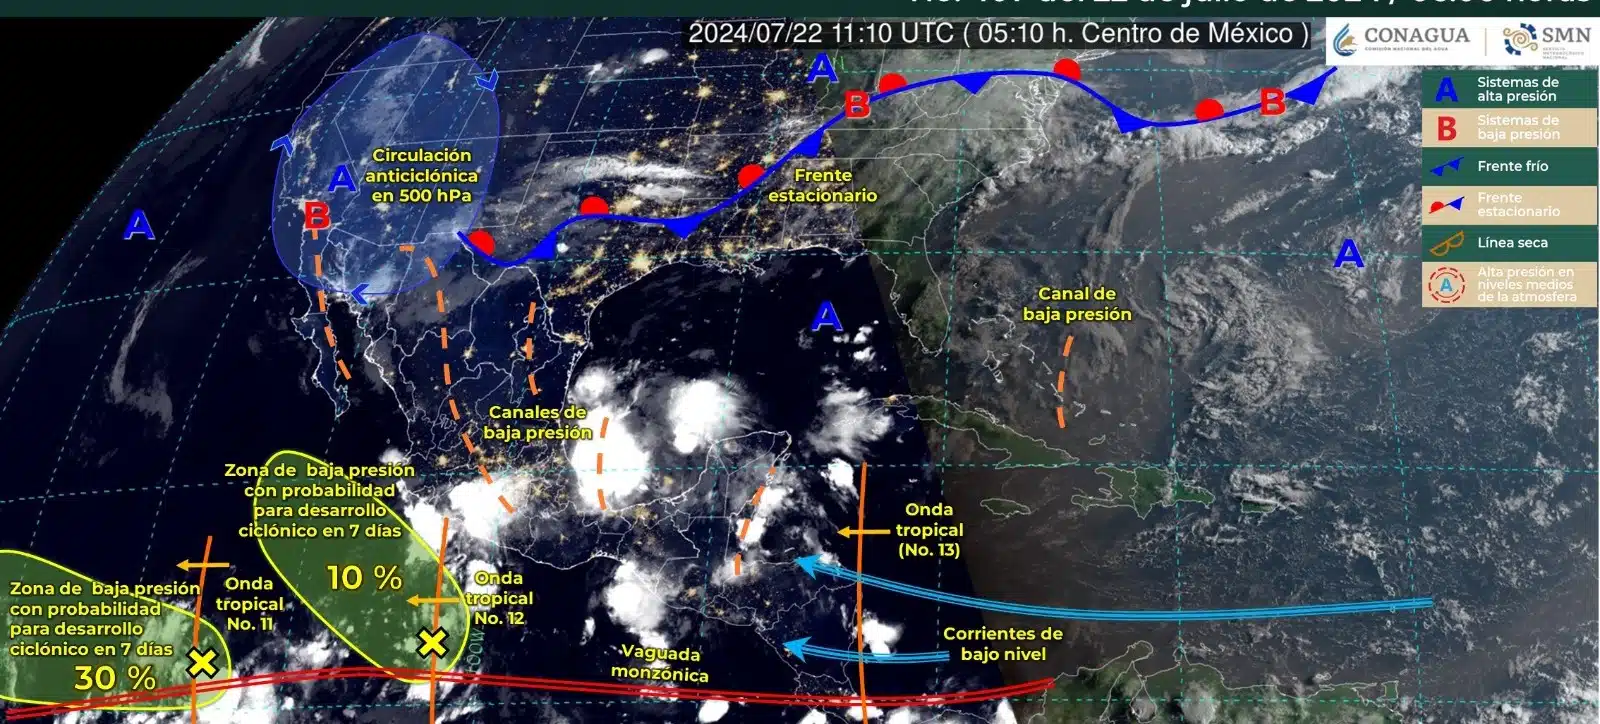 Sistemas meteorológicos activos en el Pacífico mexicano este lunes 22 de julio. Foto SMN